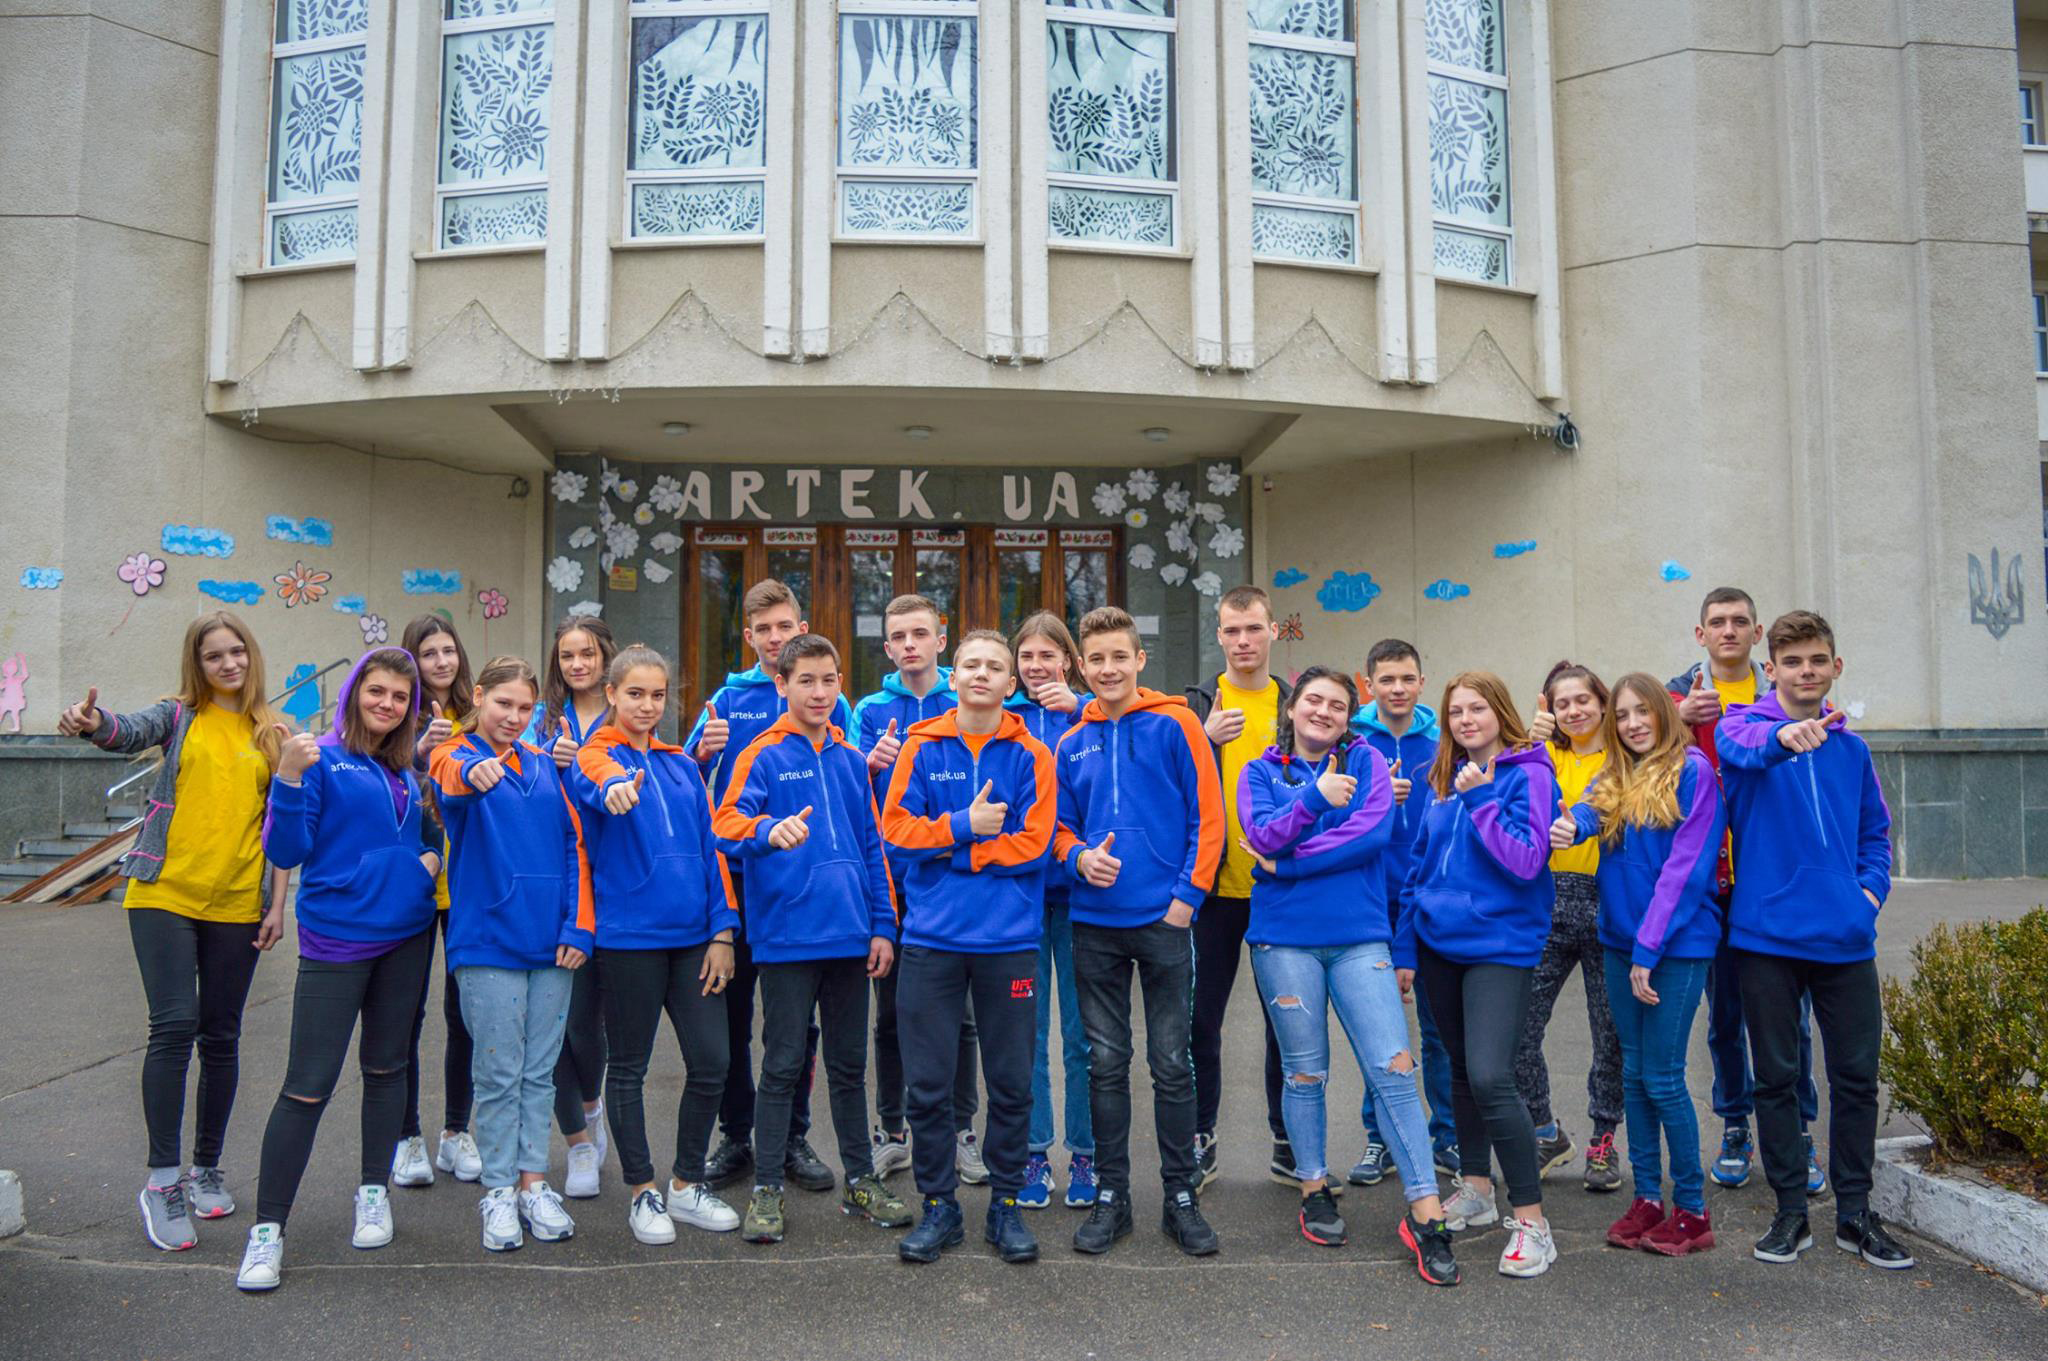 До 12 квітня у Міжнародному дитячому центрі «Артек» триває тематична зміна «Артек» збирає друзів», учасниками якої стали понад 900 дітей з усієї України. Фото з сайту dus.gov.ua